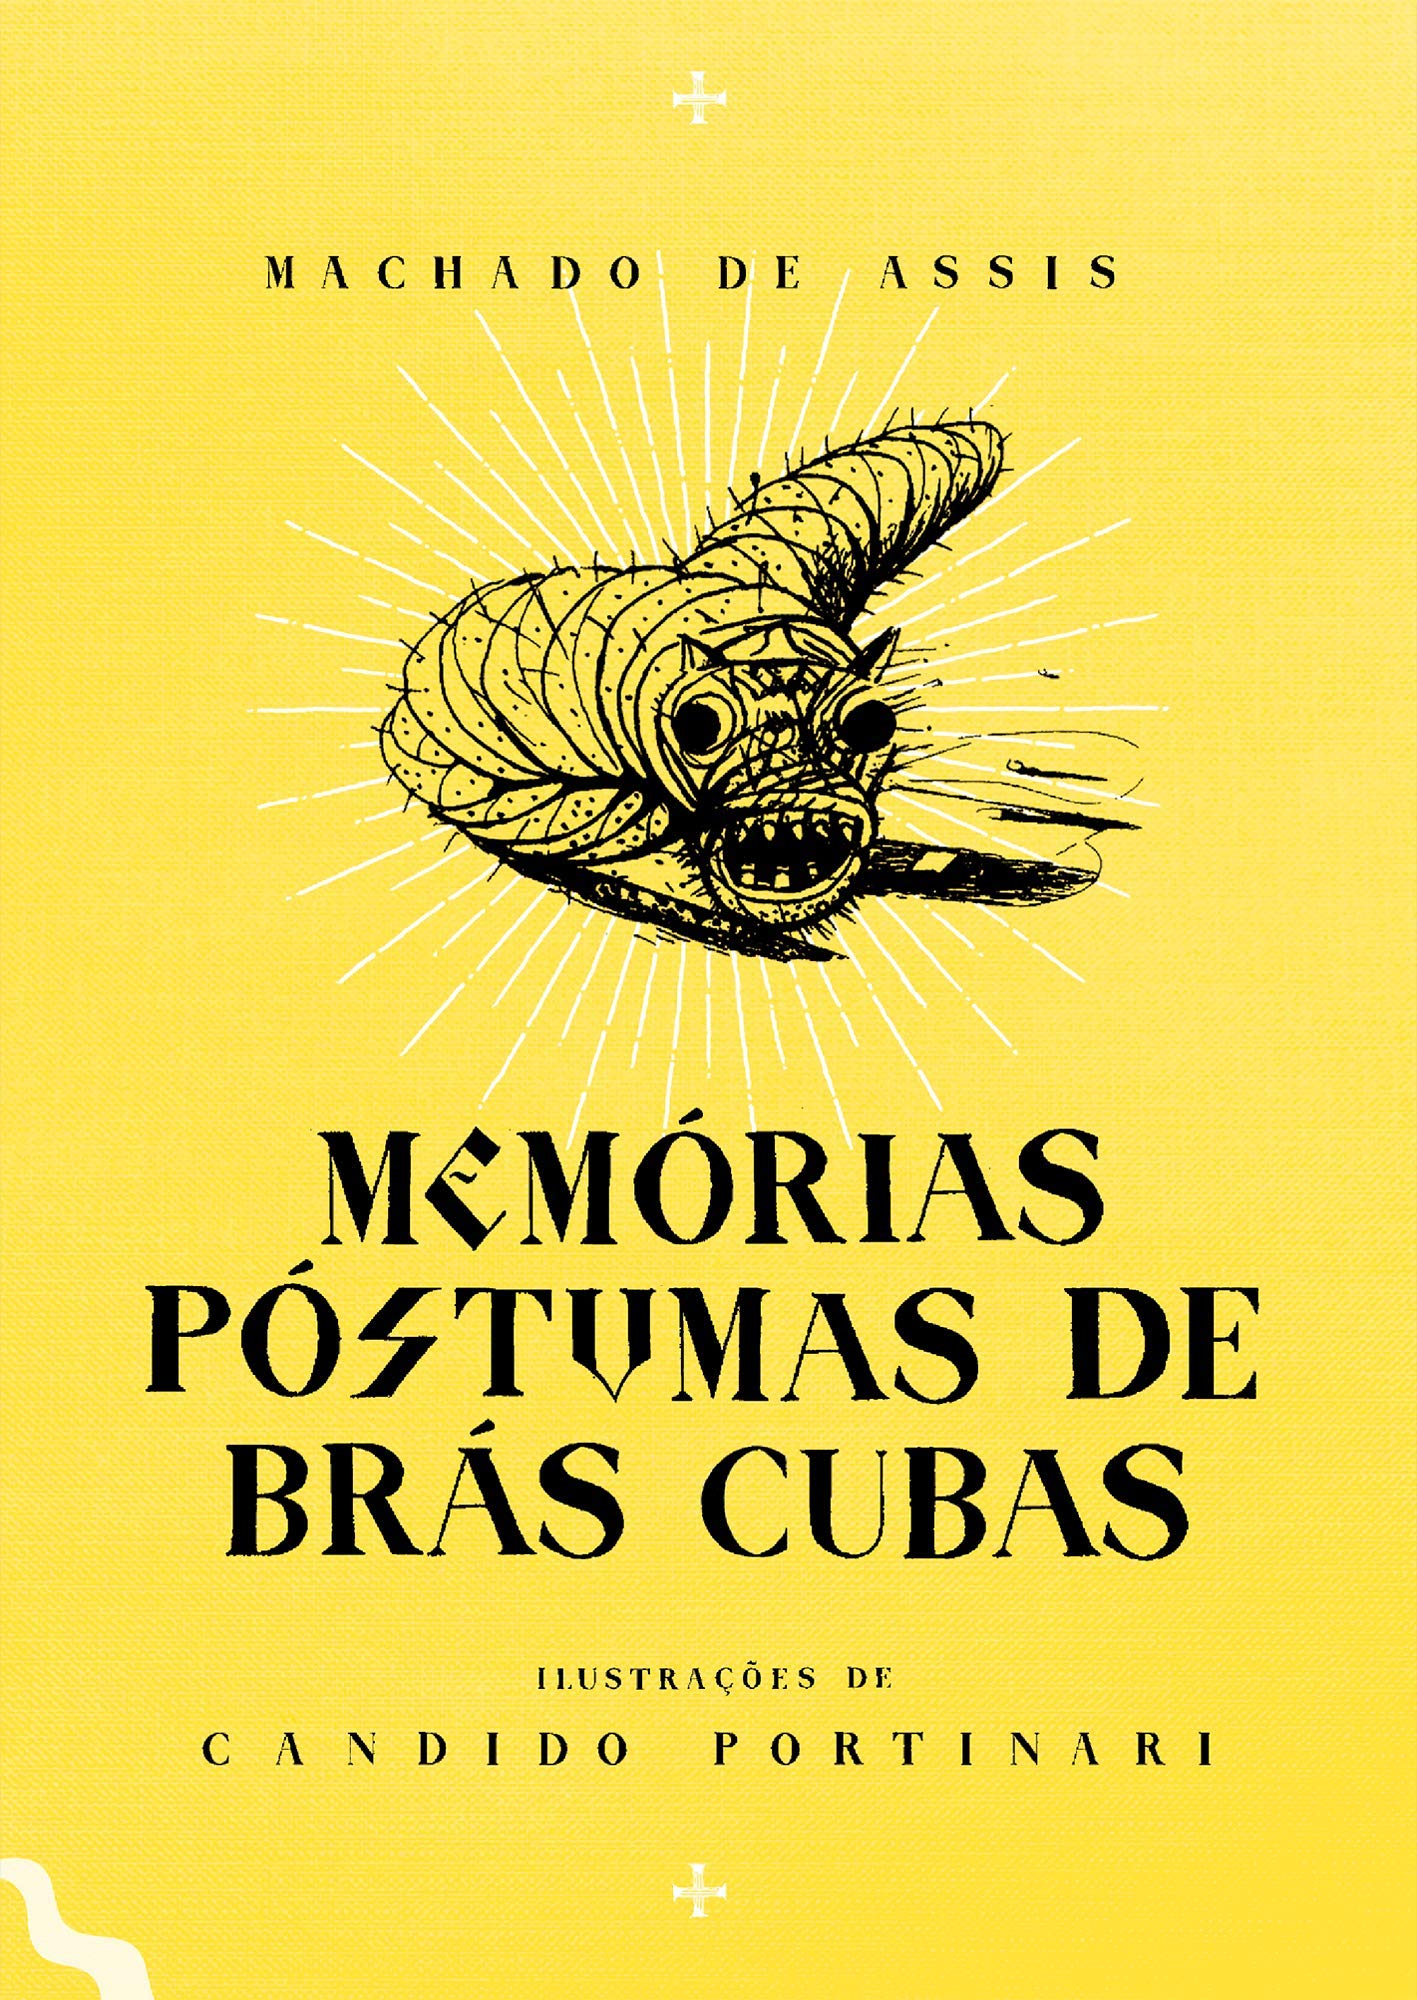 Memórias Póstumas de Brás Cubas : Machado de Assis : Free Download, Borrow,  and Streaming : Internet Archive